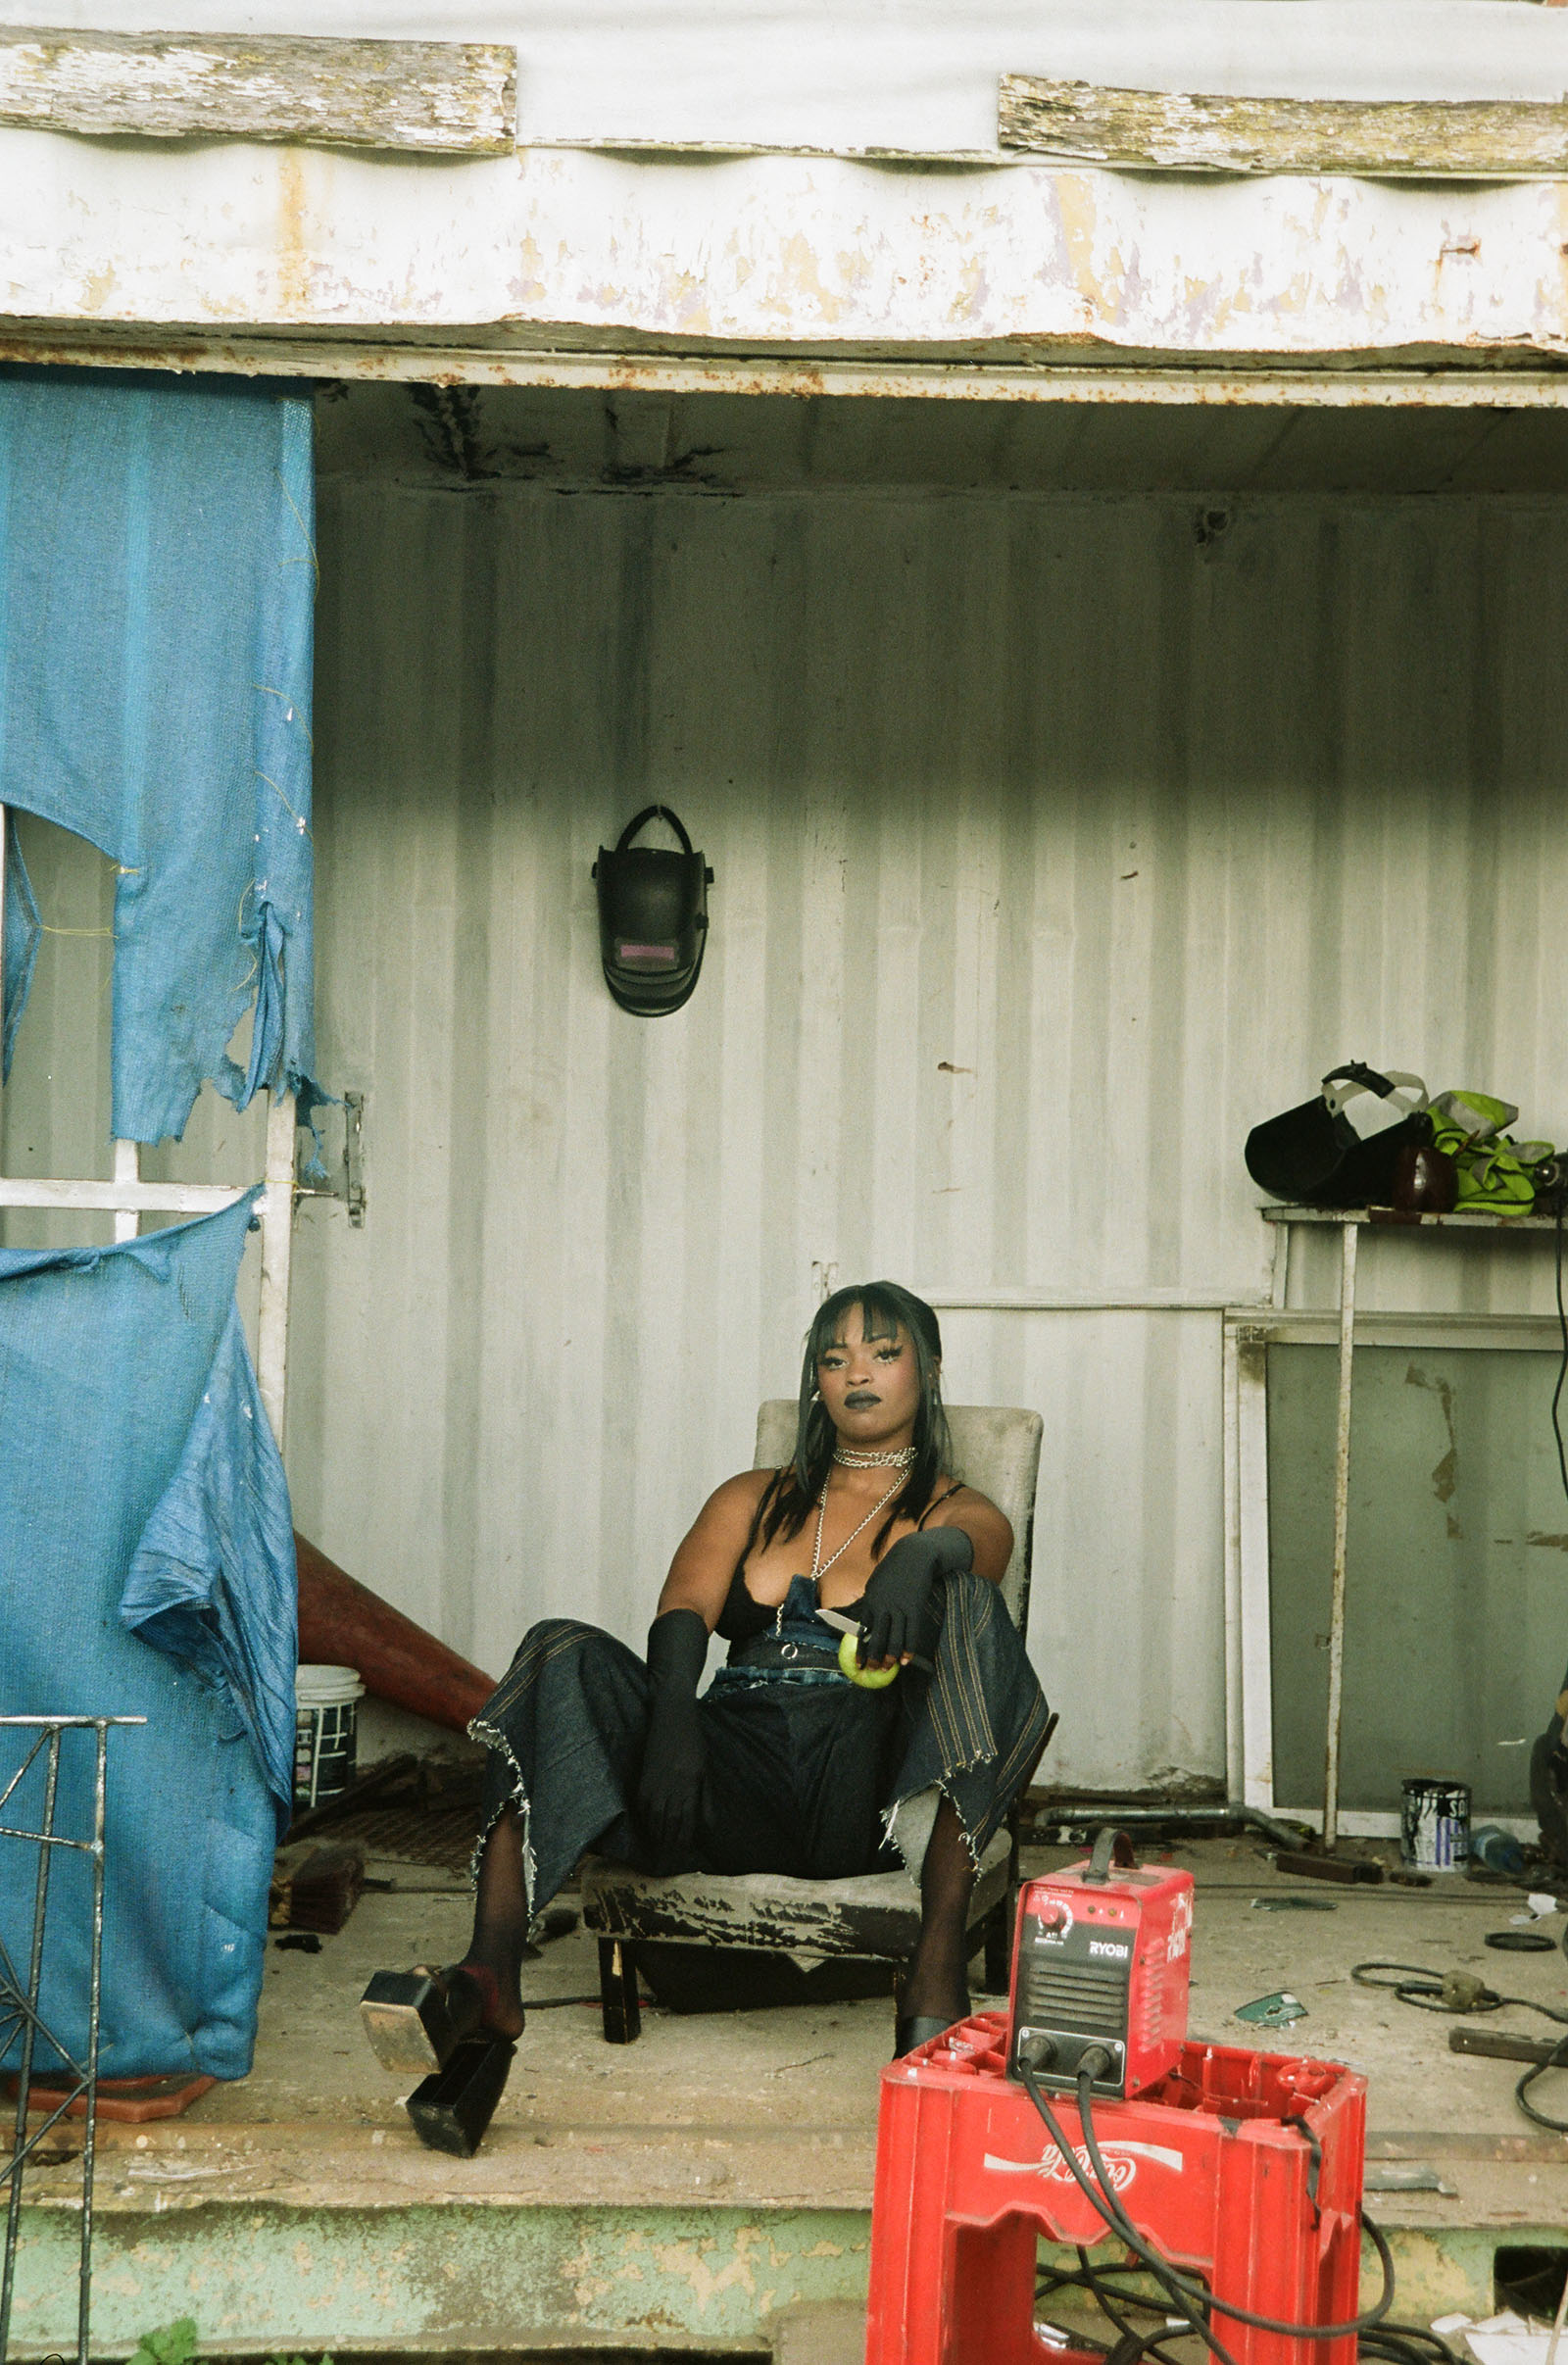 A woman sits, posing at the camera.